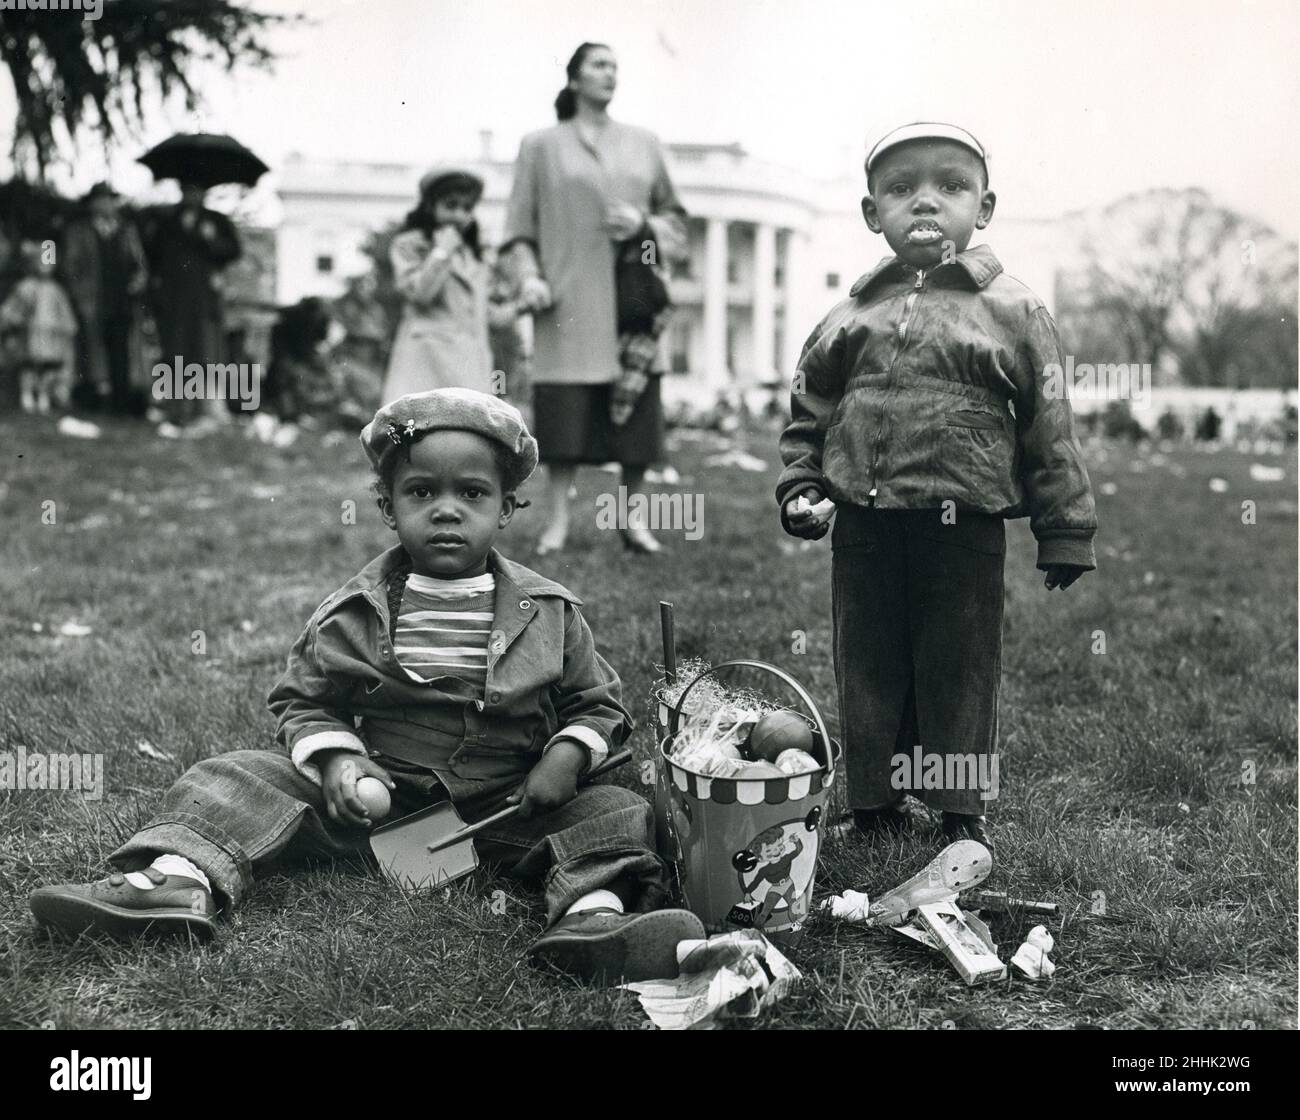 White House, 6. April 1953 - zwei Jugendliche genießen die Beute beim jährlichen White House Egg Roll. Foto: Abbie Rowe Stockfoto